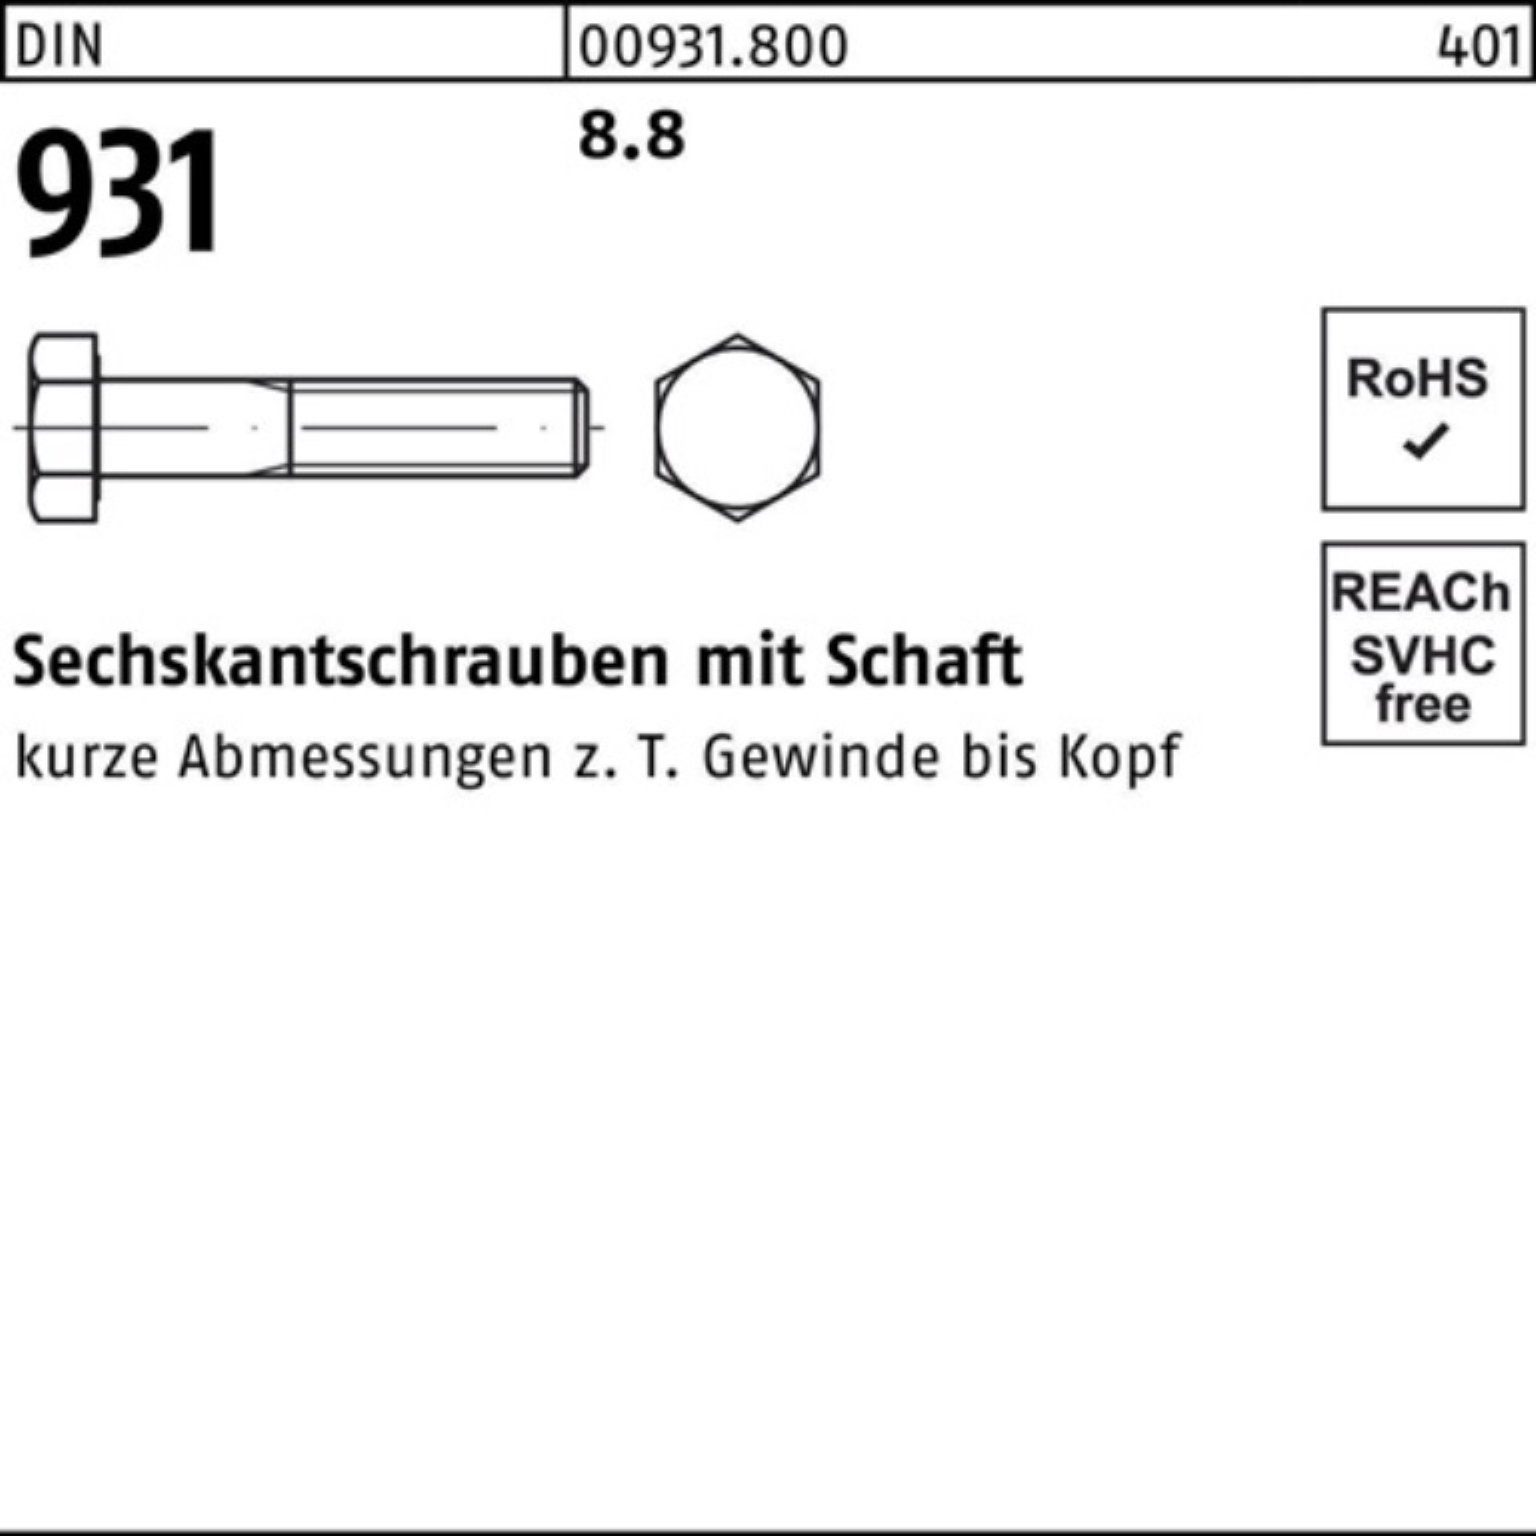 Reyher Sechskantschraube 100er Pack Sechskantschraube 931 DIN M12x DIN Schaft 100 8.8 45 Stück